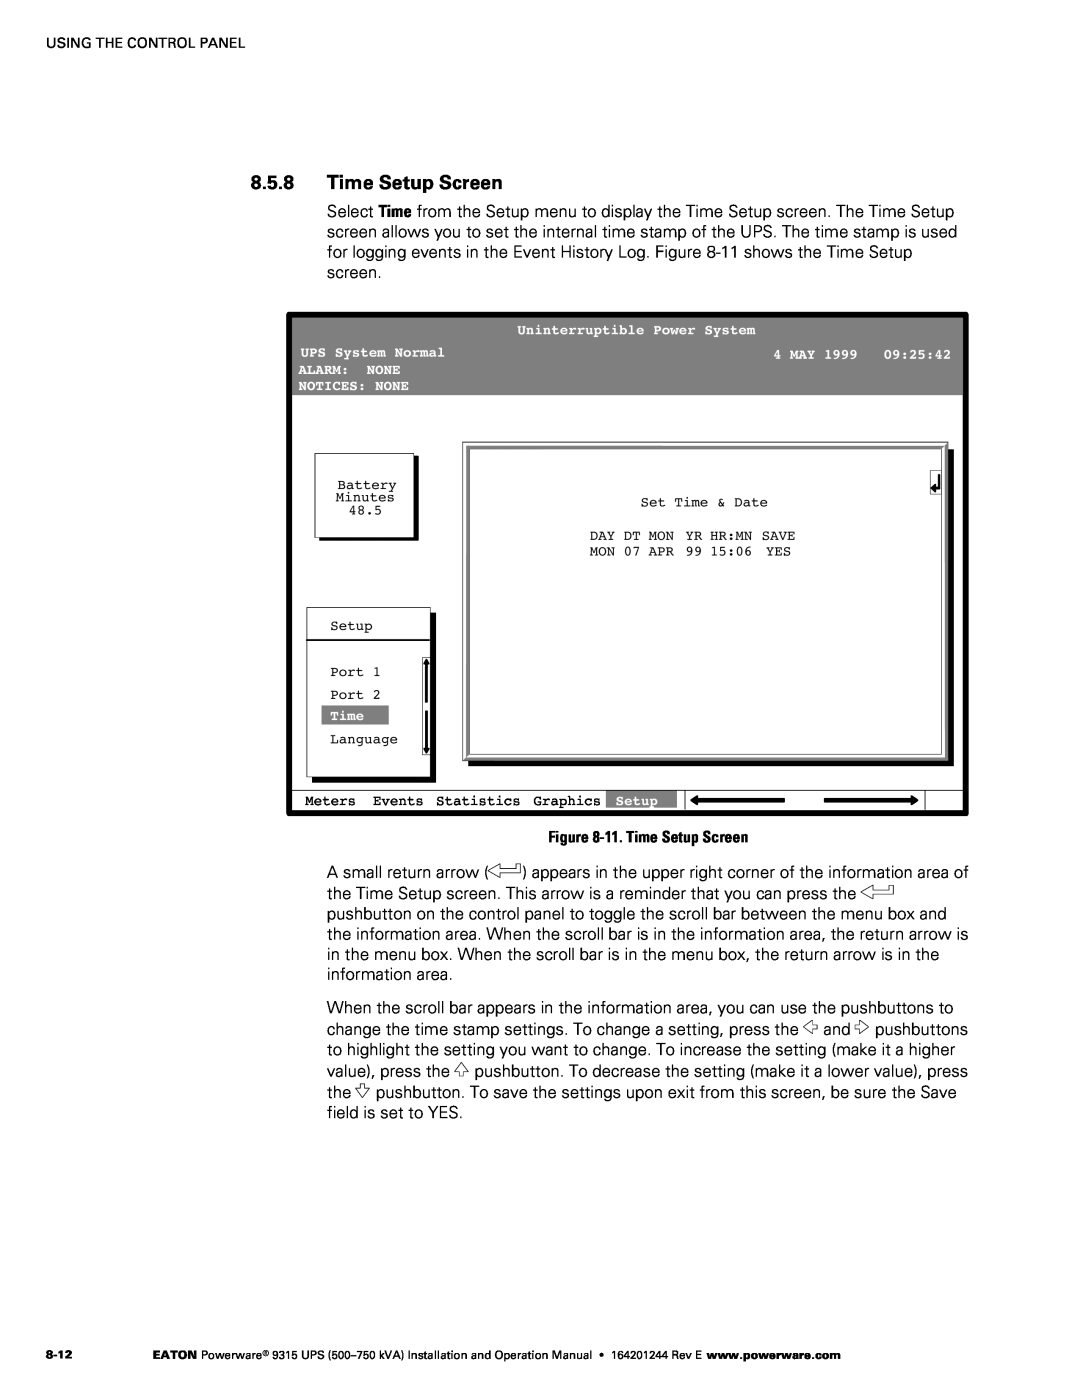 Powerware Powerware 9315 operation manual ‐11. Time Setup Screen 